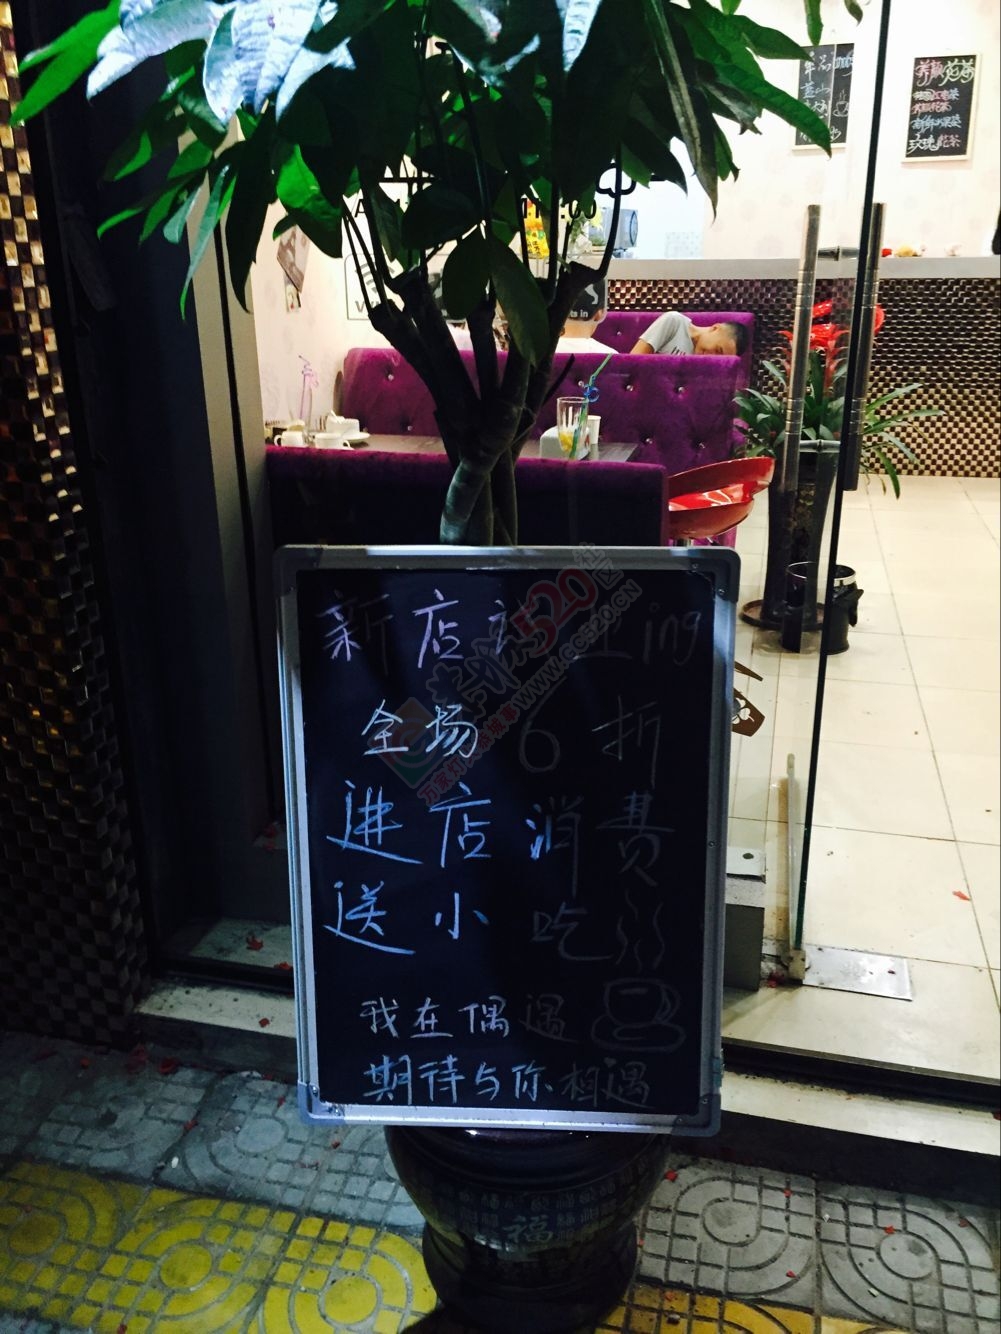 今天偶然路过一个叫偶遇的奶茶店62 / 作者:水墨茶江 / 帖子ID:171921